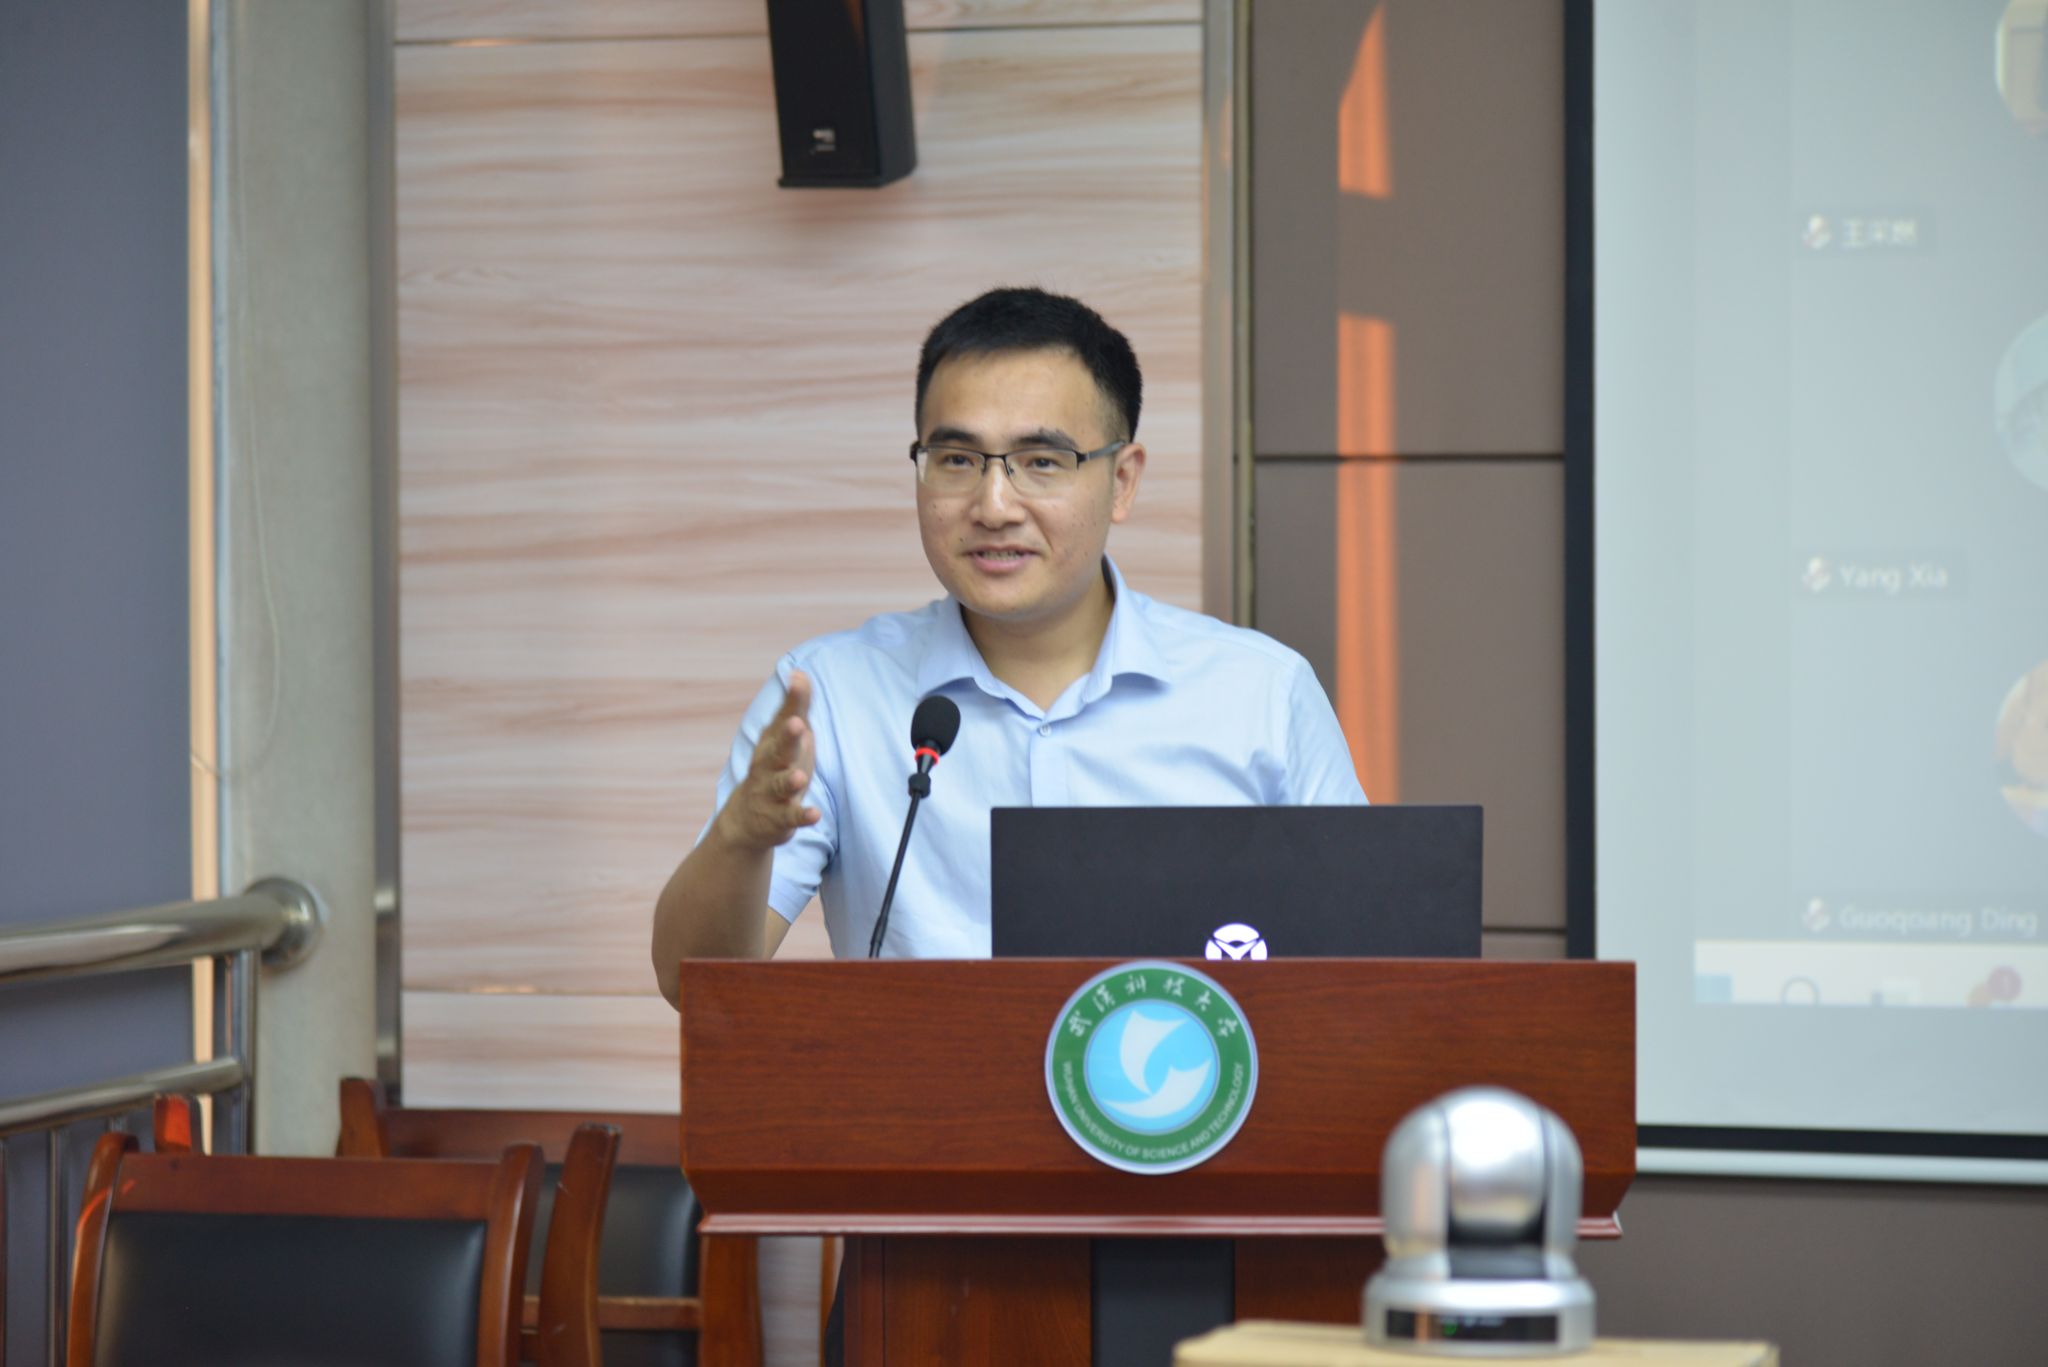 研究生院副院长冯涛教授致开幕辞,他代表武汉科技大学对多年来支持